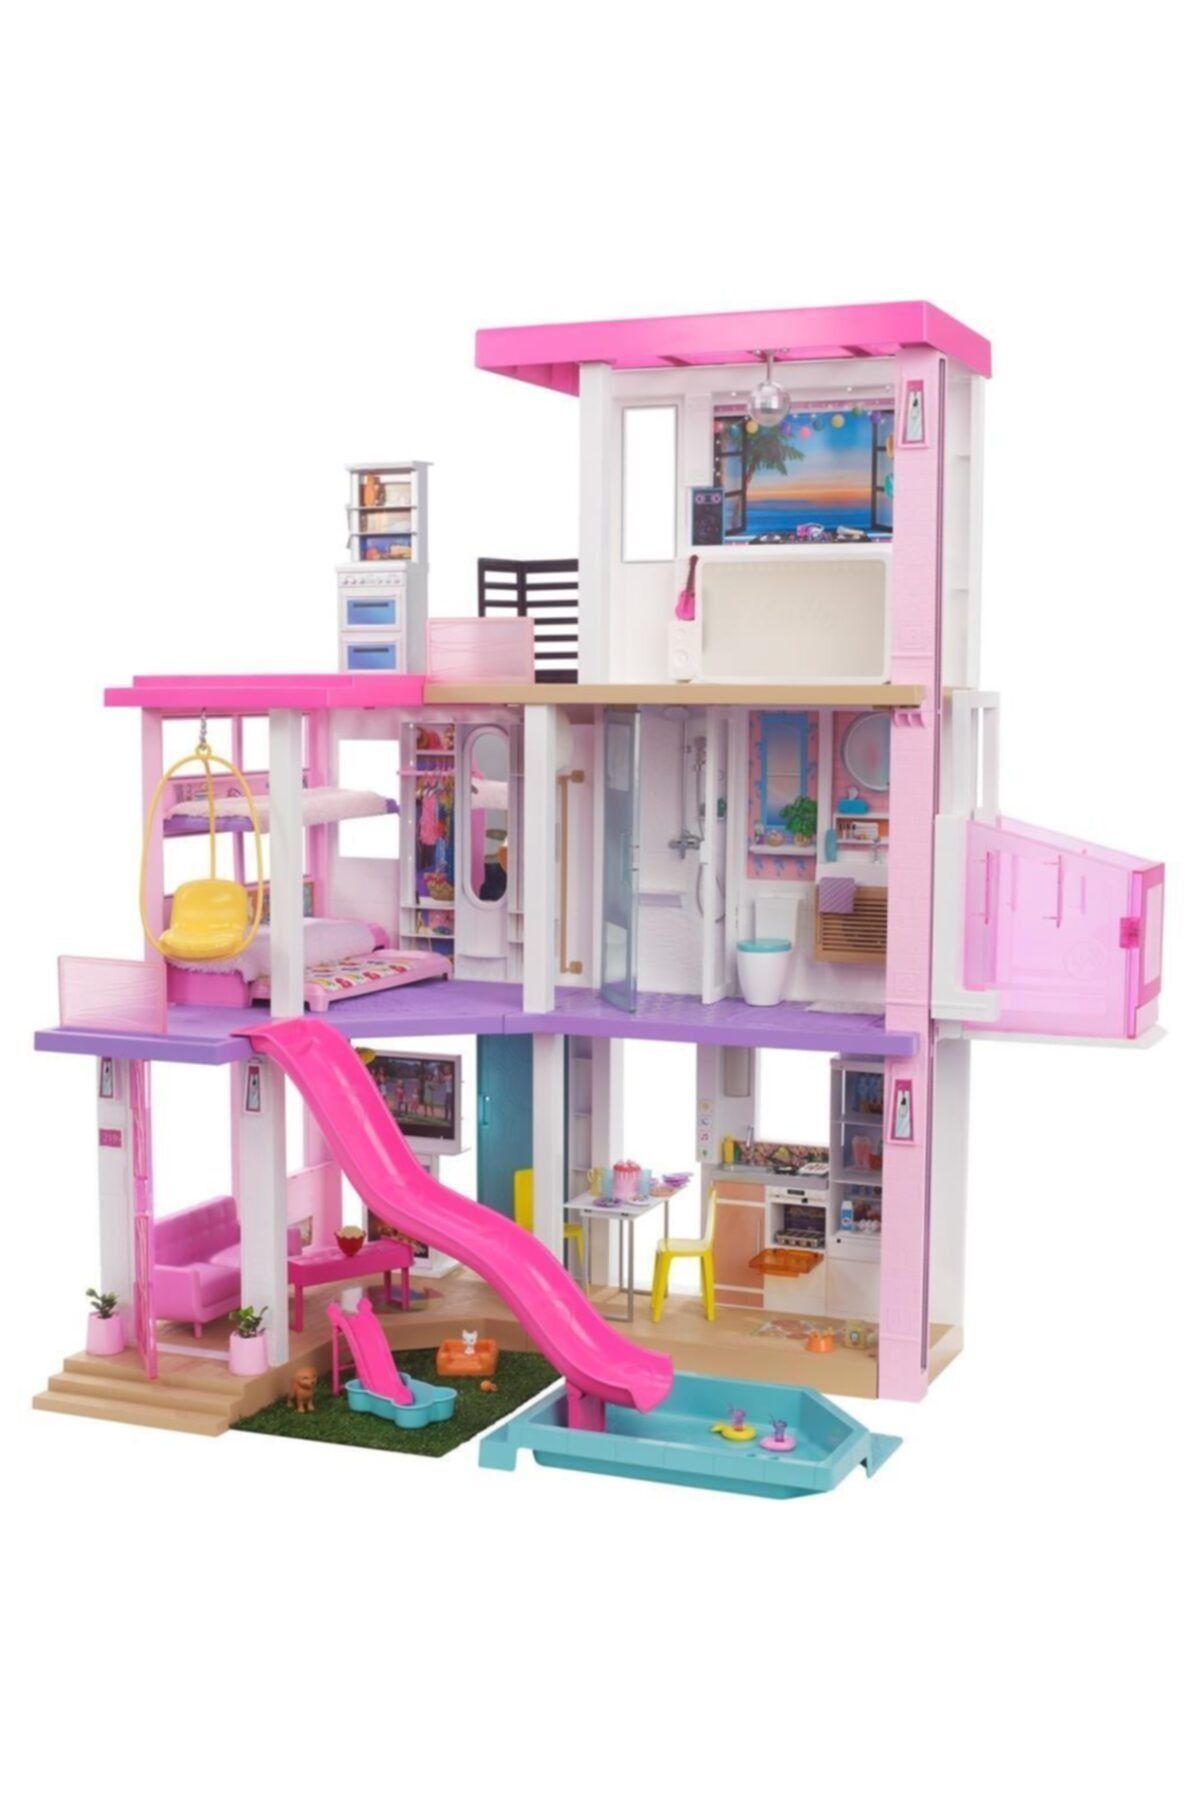 Barbie Grg93 'nin Rüya Evi (115 Cm), 75'ten Fazla Aksesuarı Bulunan, 3 Katlı 3-7 Yaş Arası Kızlar Içi